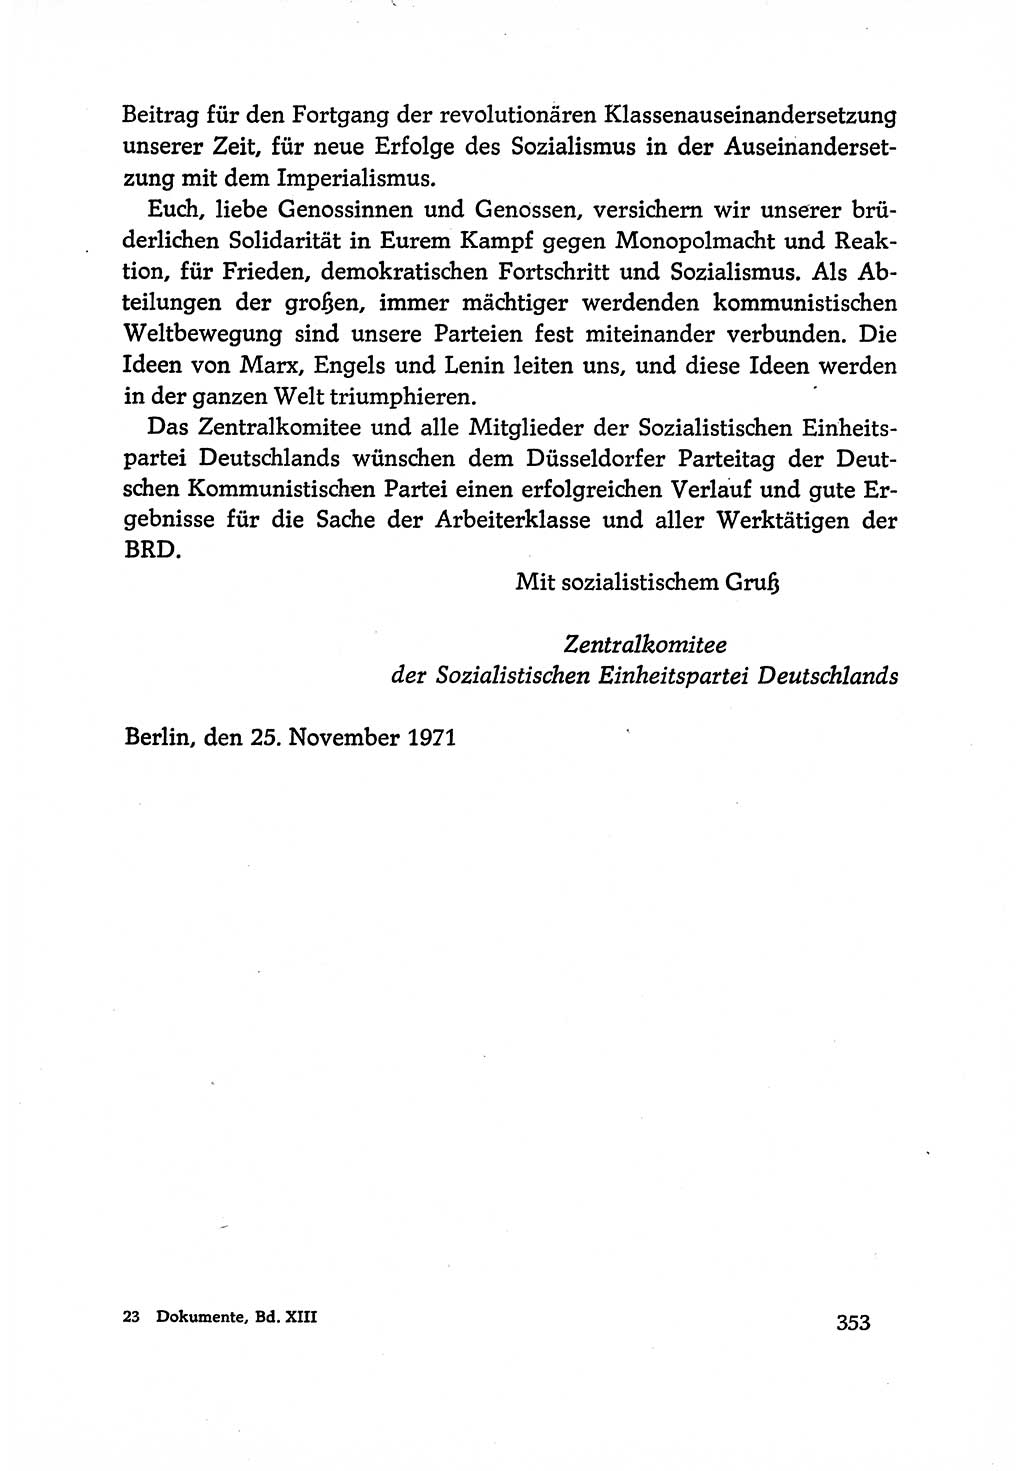 Dokumente der Sozialistischen Einheitspartei Deutschlands (SED) [Deutsche Demokratische Republik (DDR)] 1970-1971, Seite 353 (Dok. SED DDR 1970-1971, S. 353)